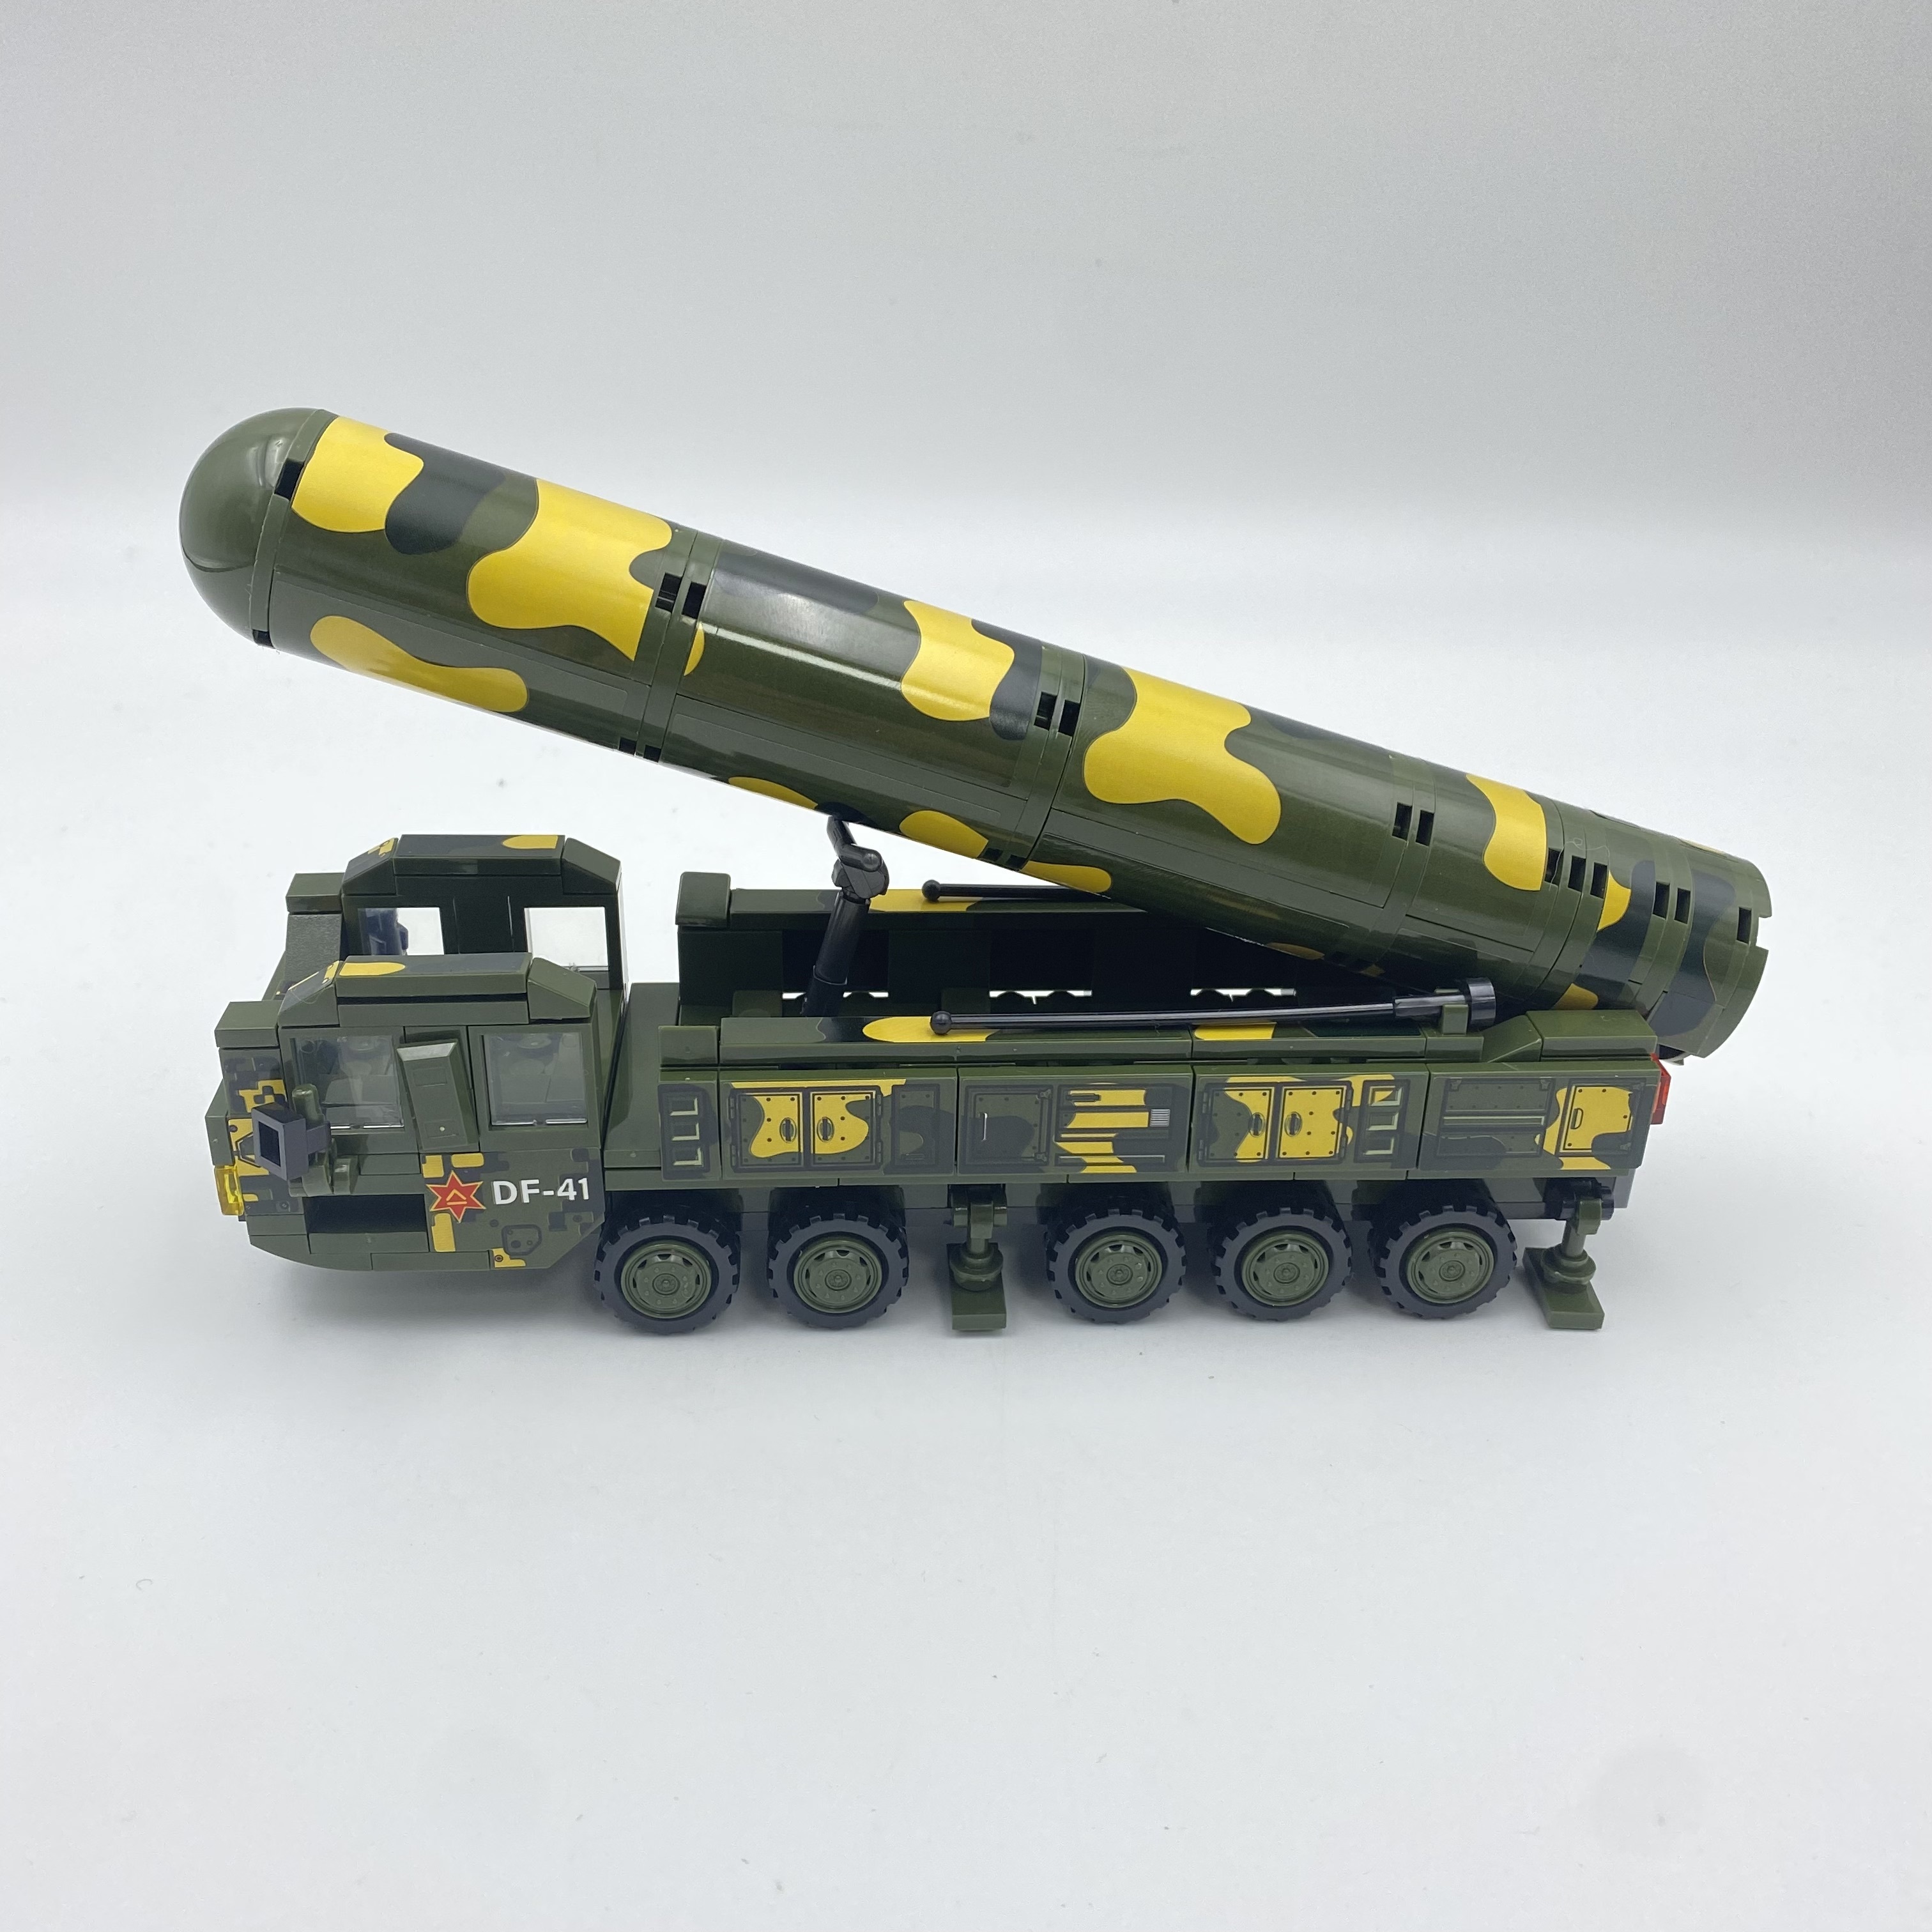 350個の軍事シリーズミサイル車両シミュレーションモデル、弾道ミサイルリフト回転小型組み立てブロックおもちゃ、誕生日プレゼント